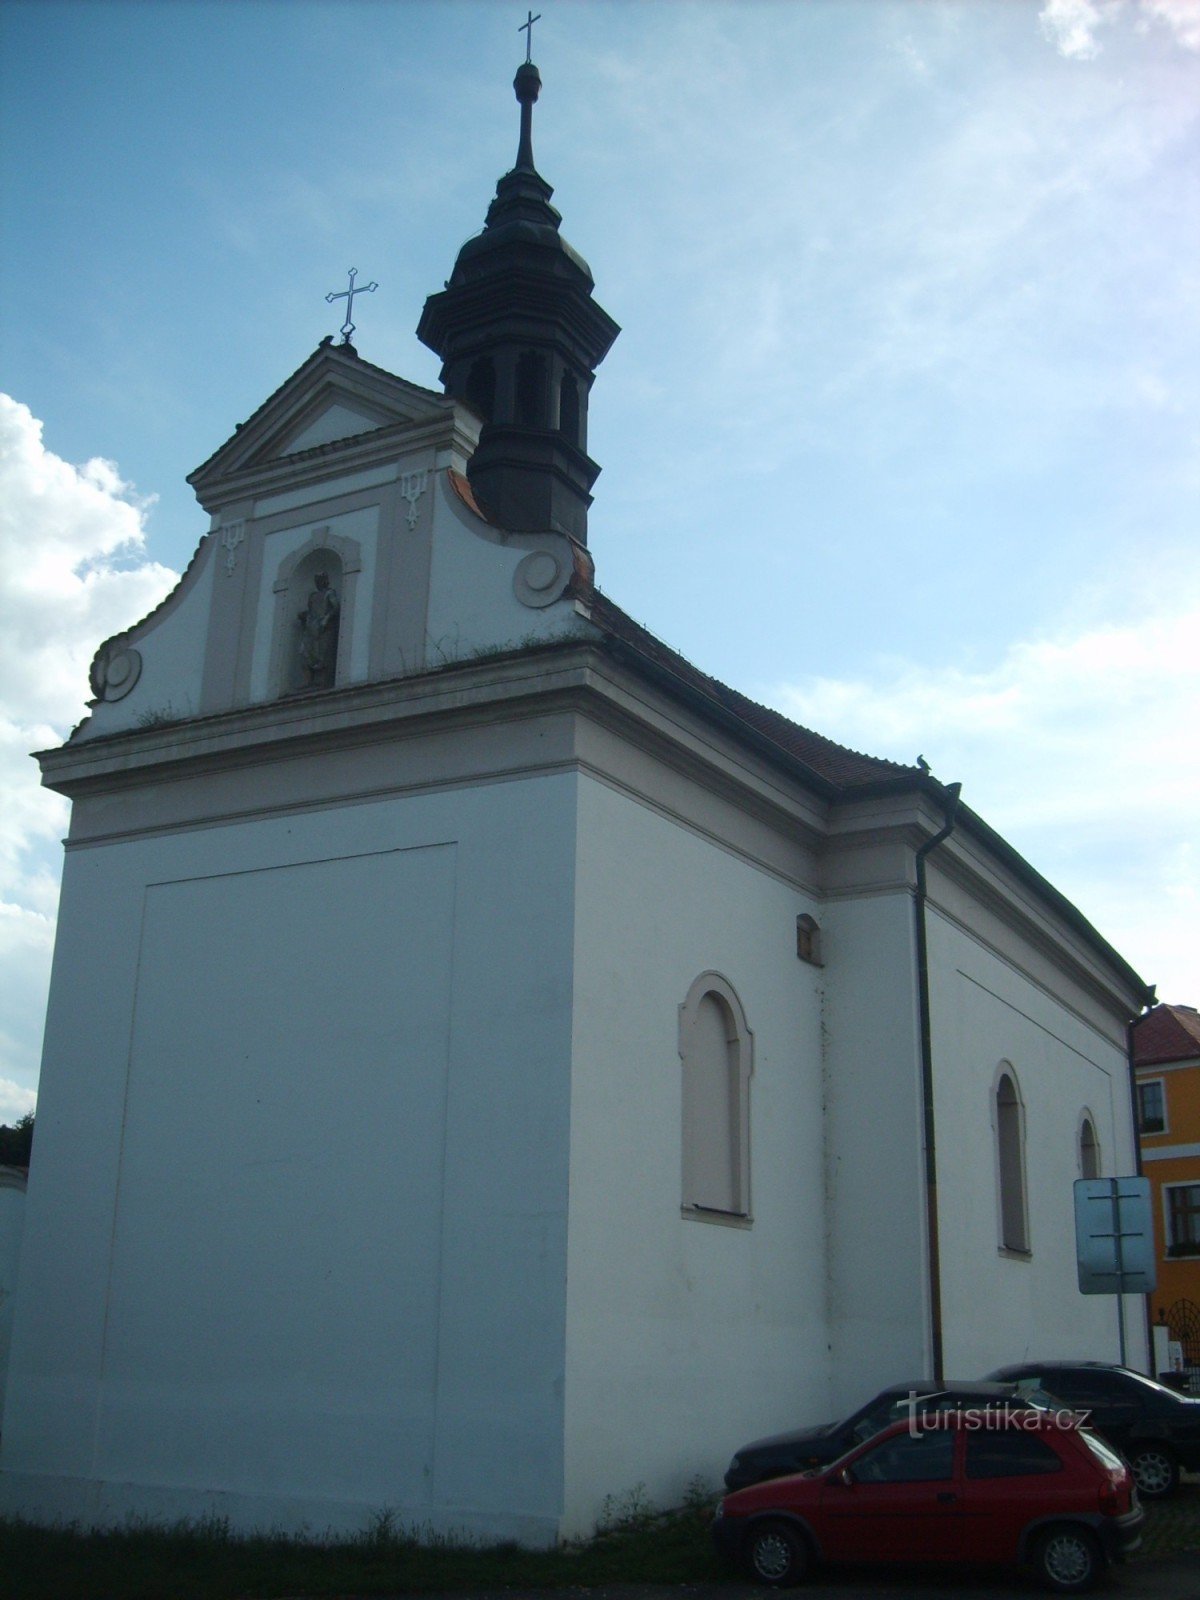 little church